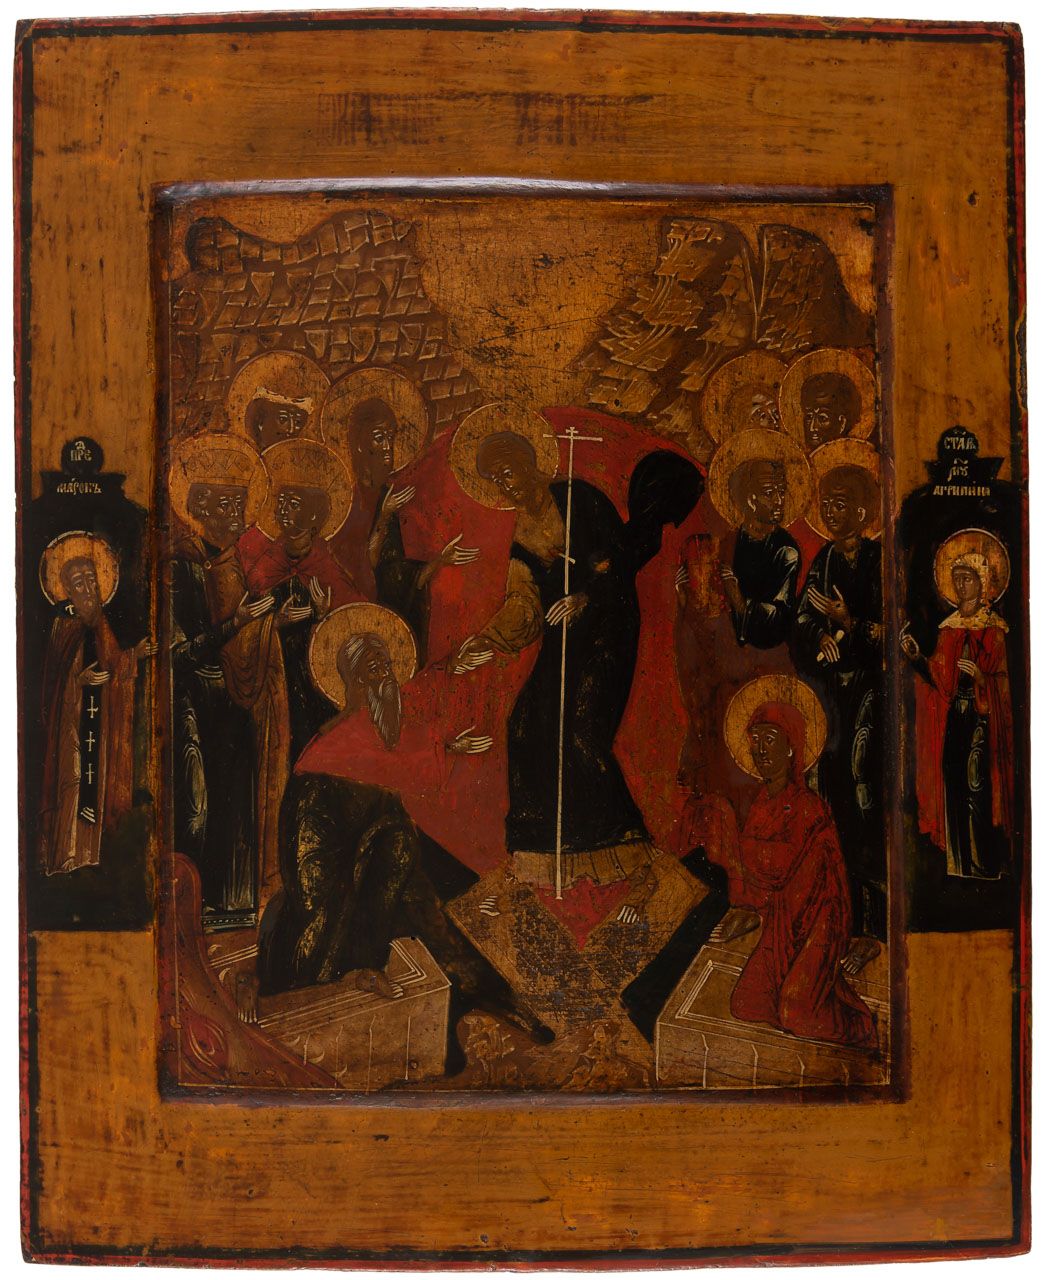 HADESFAHRT CHRISTI Icono ruso de Pascua con motivo de anástasis, siglo XVIII.

3&hellip;